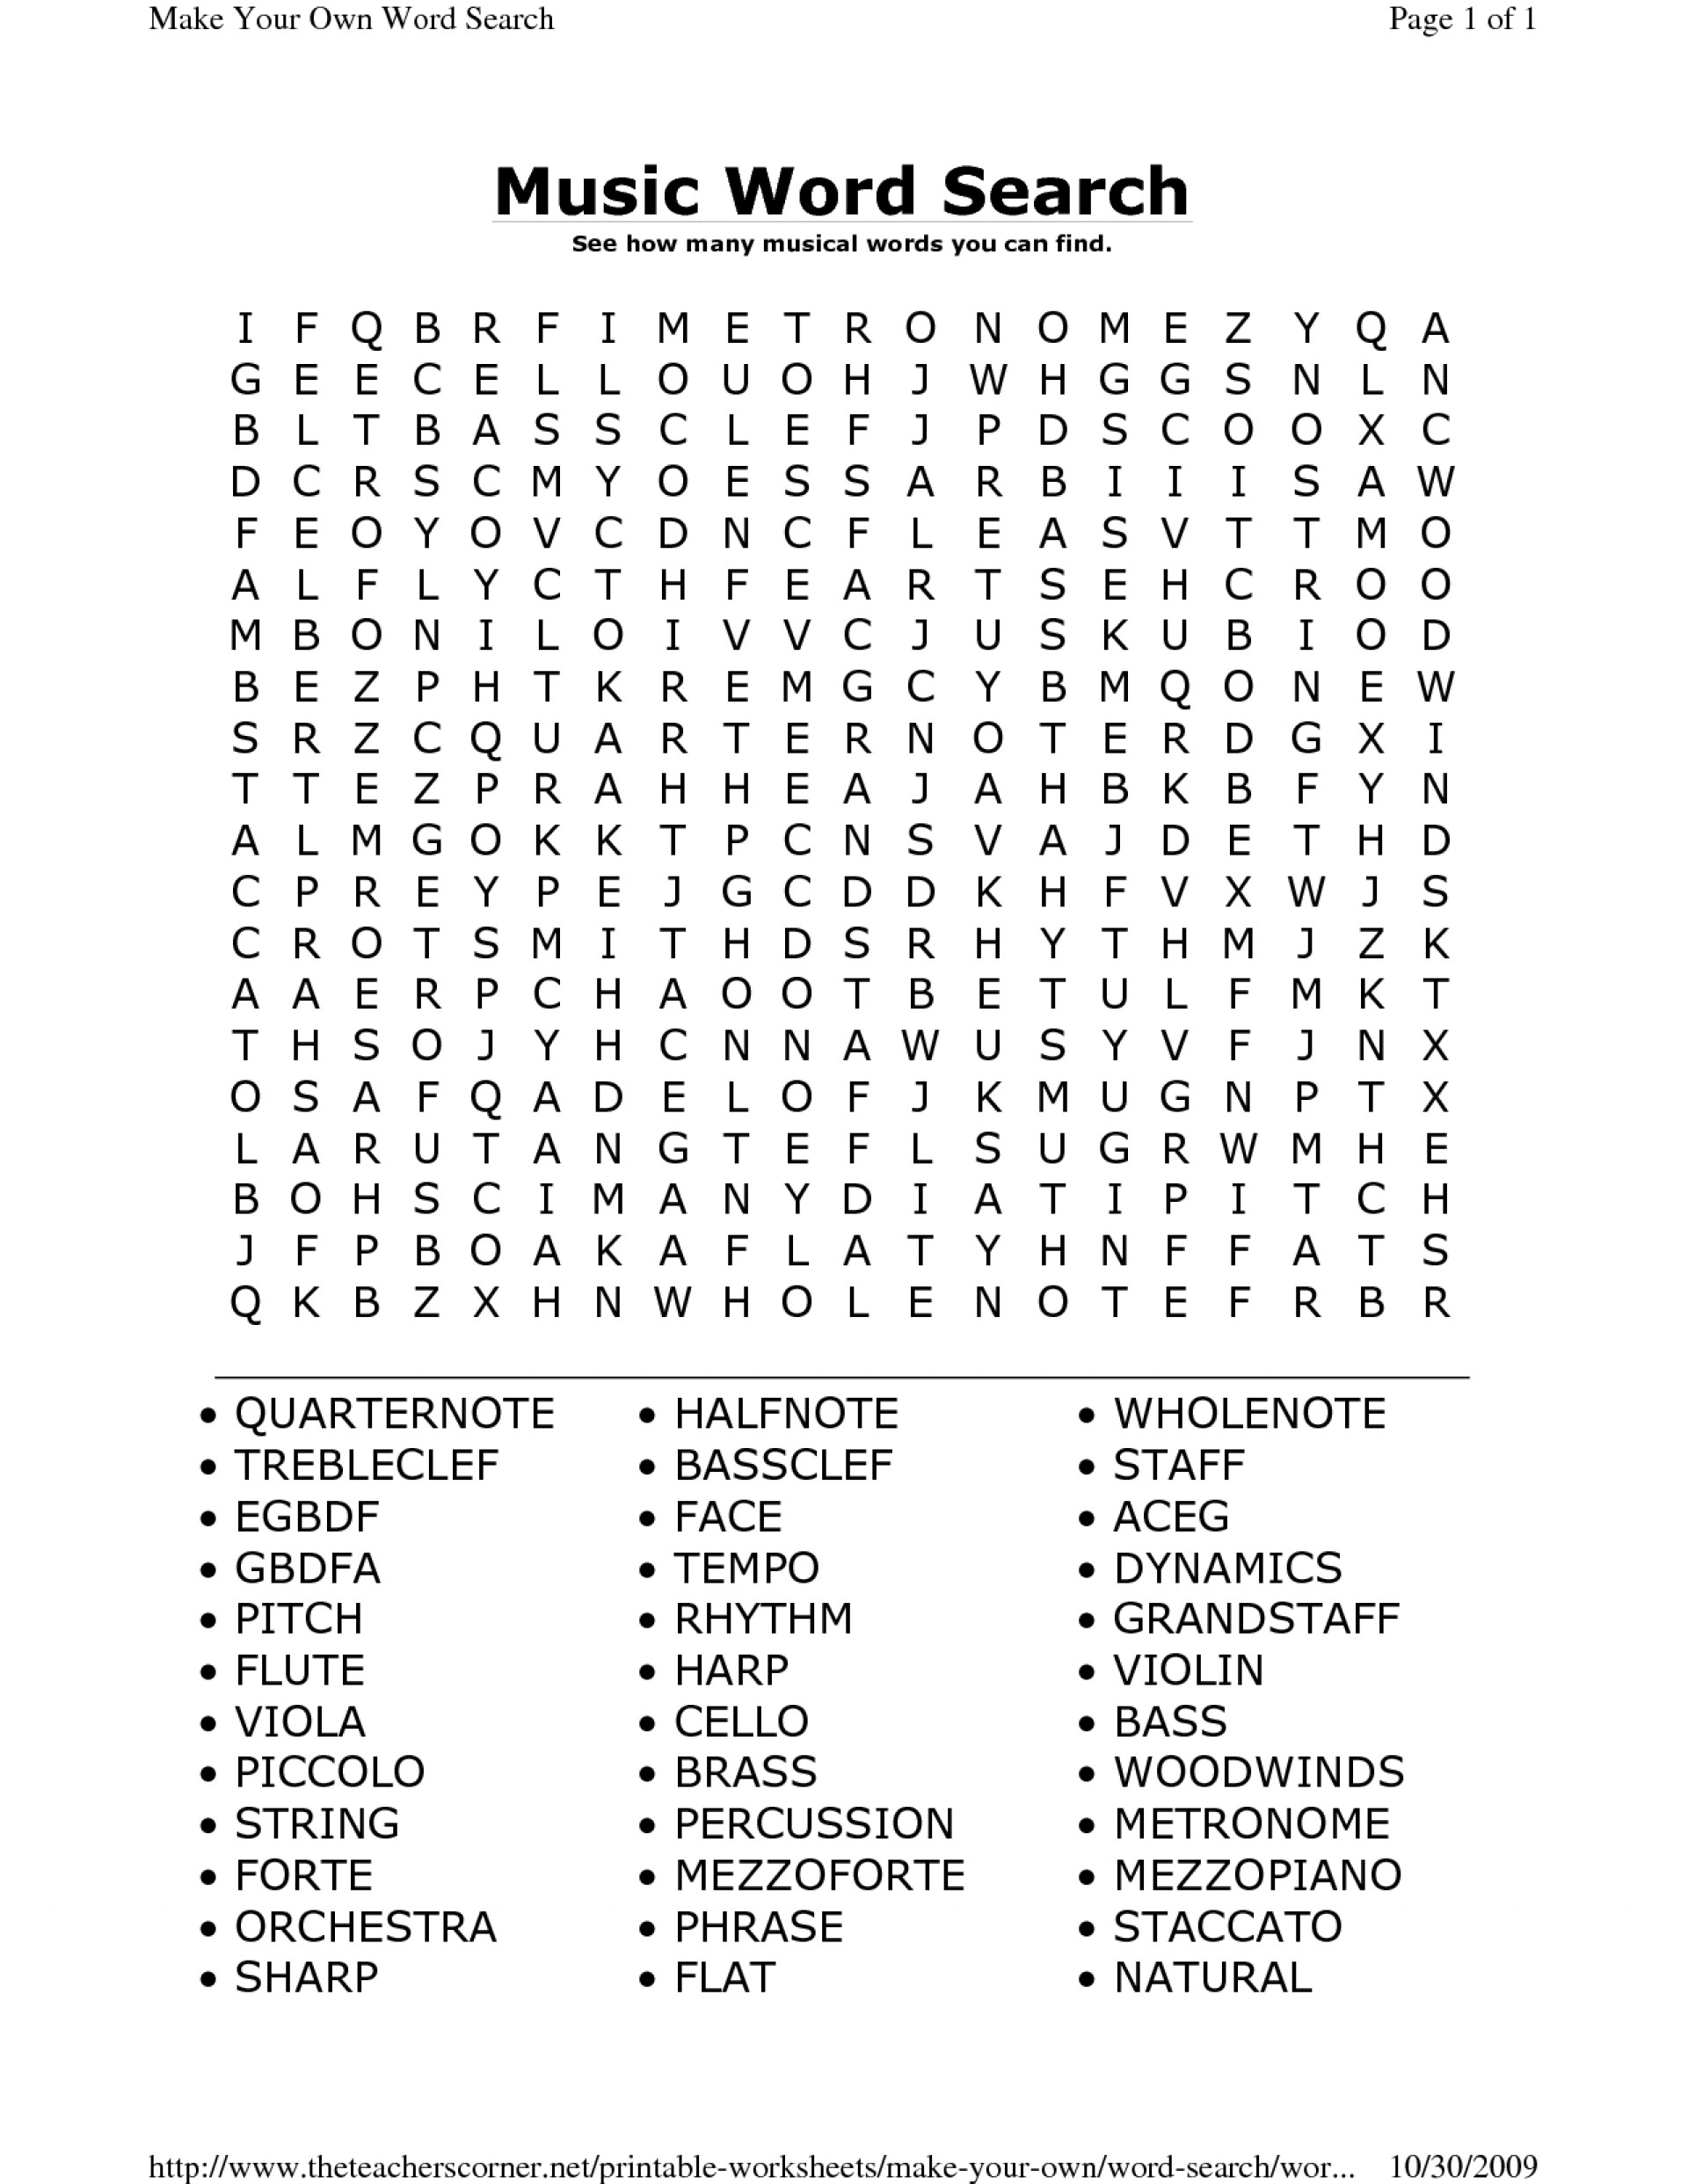 schubert compositions crossword puzzle